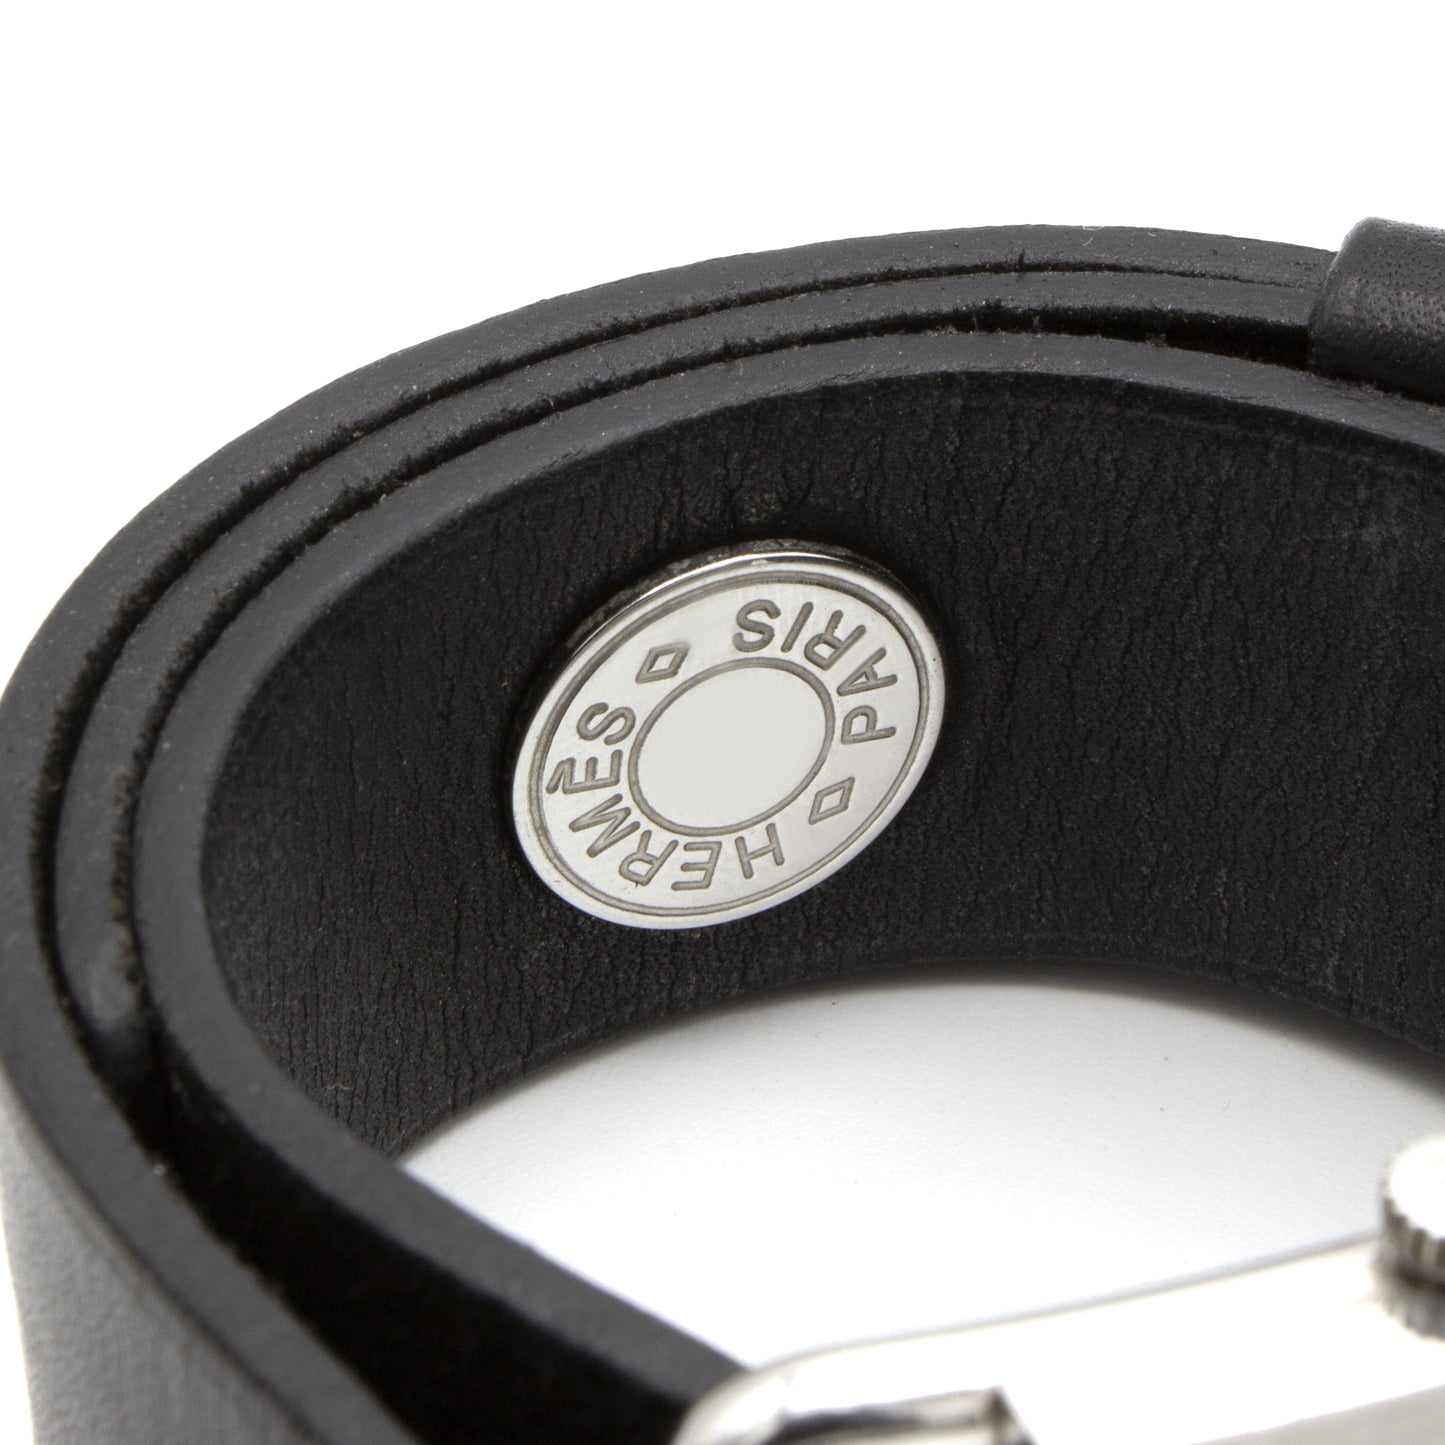 Hermès Barenia BA1.510 watch